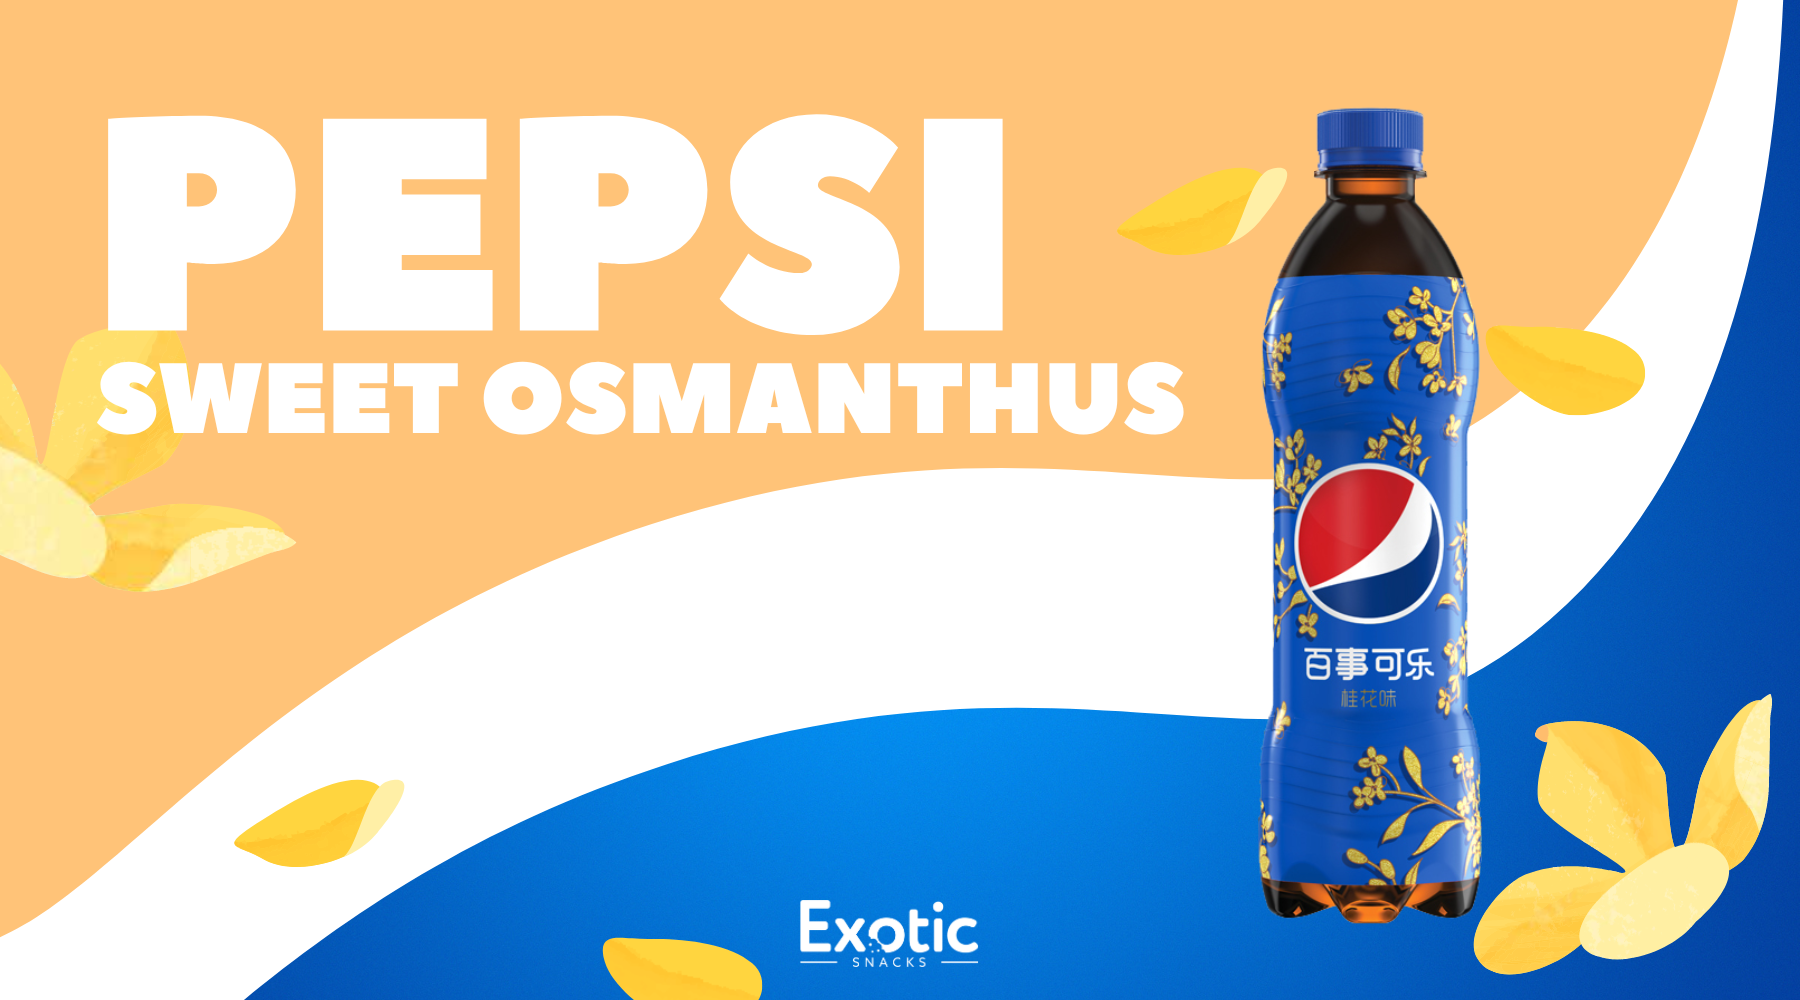 Pepsi Sweet Osmanthus